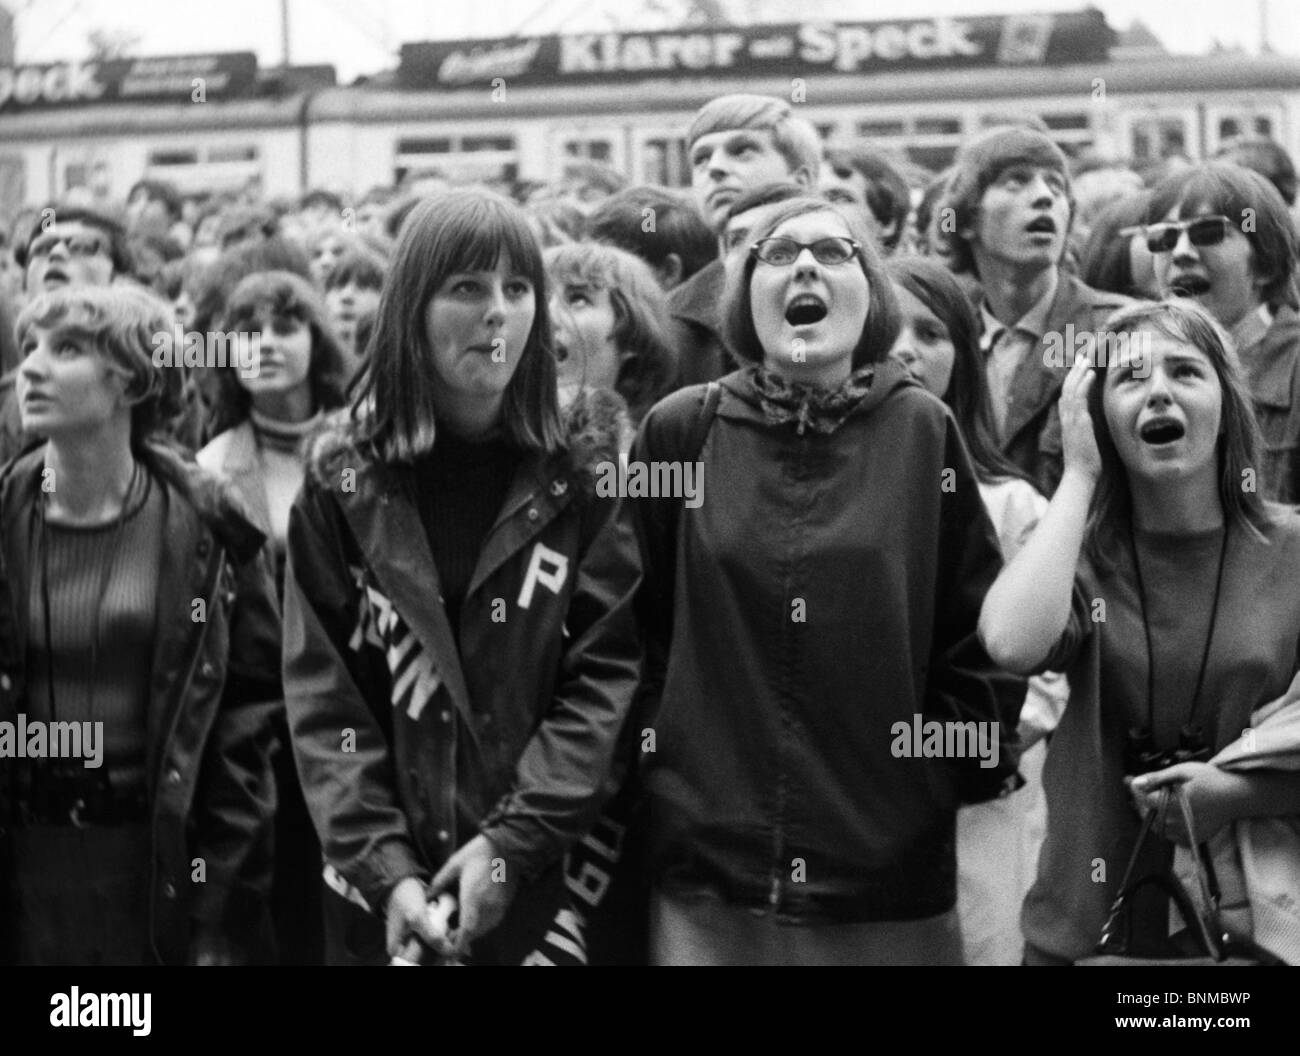 1966 1960TH 60 fans de galet d'excitation battre les Beatles concert Allemagne l'enthousiasme des jeunes groupe Grugahalle Essen émotions Banque D'Images